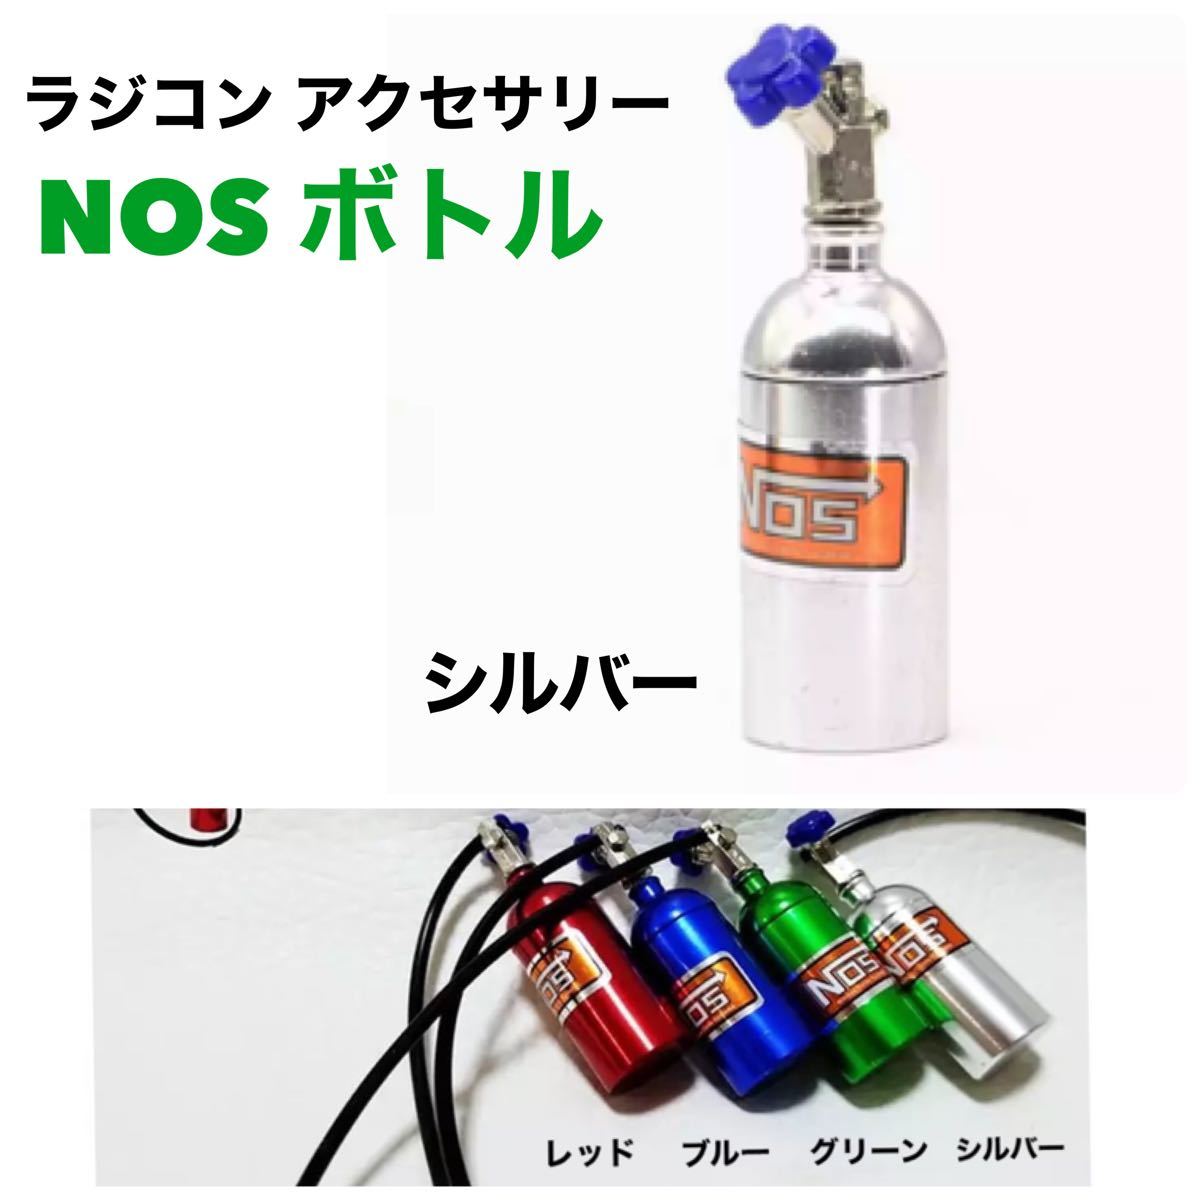 ラジコン用 1/10 R/C【NOS ボトル】 アクセサリー パーツ ドリフト